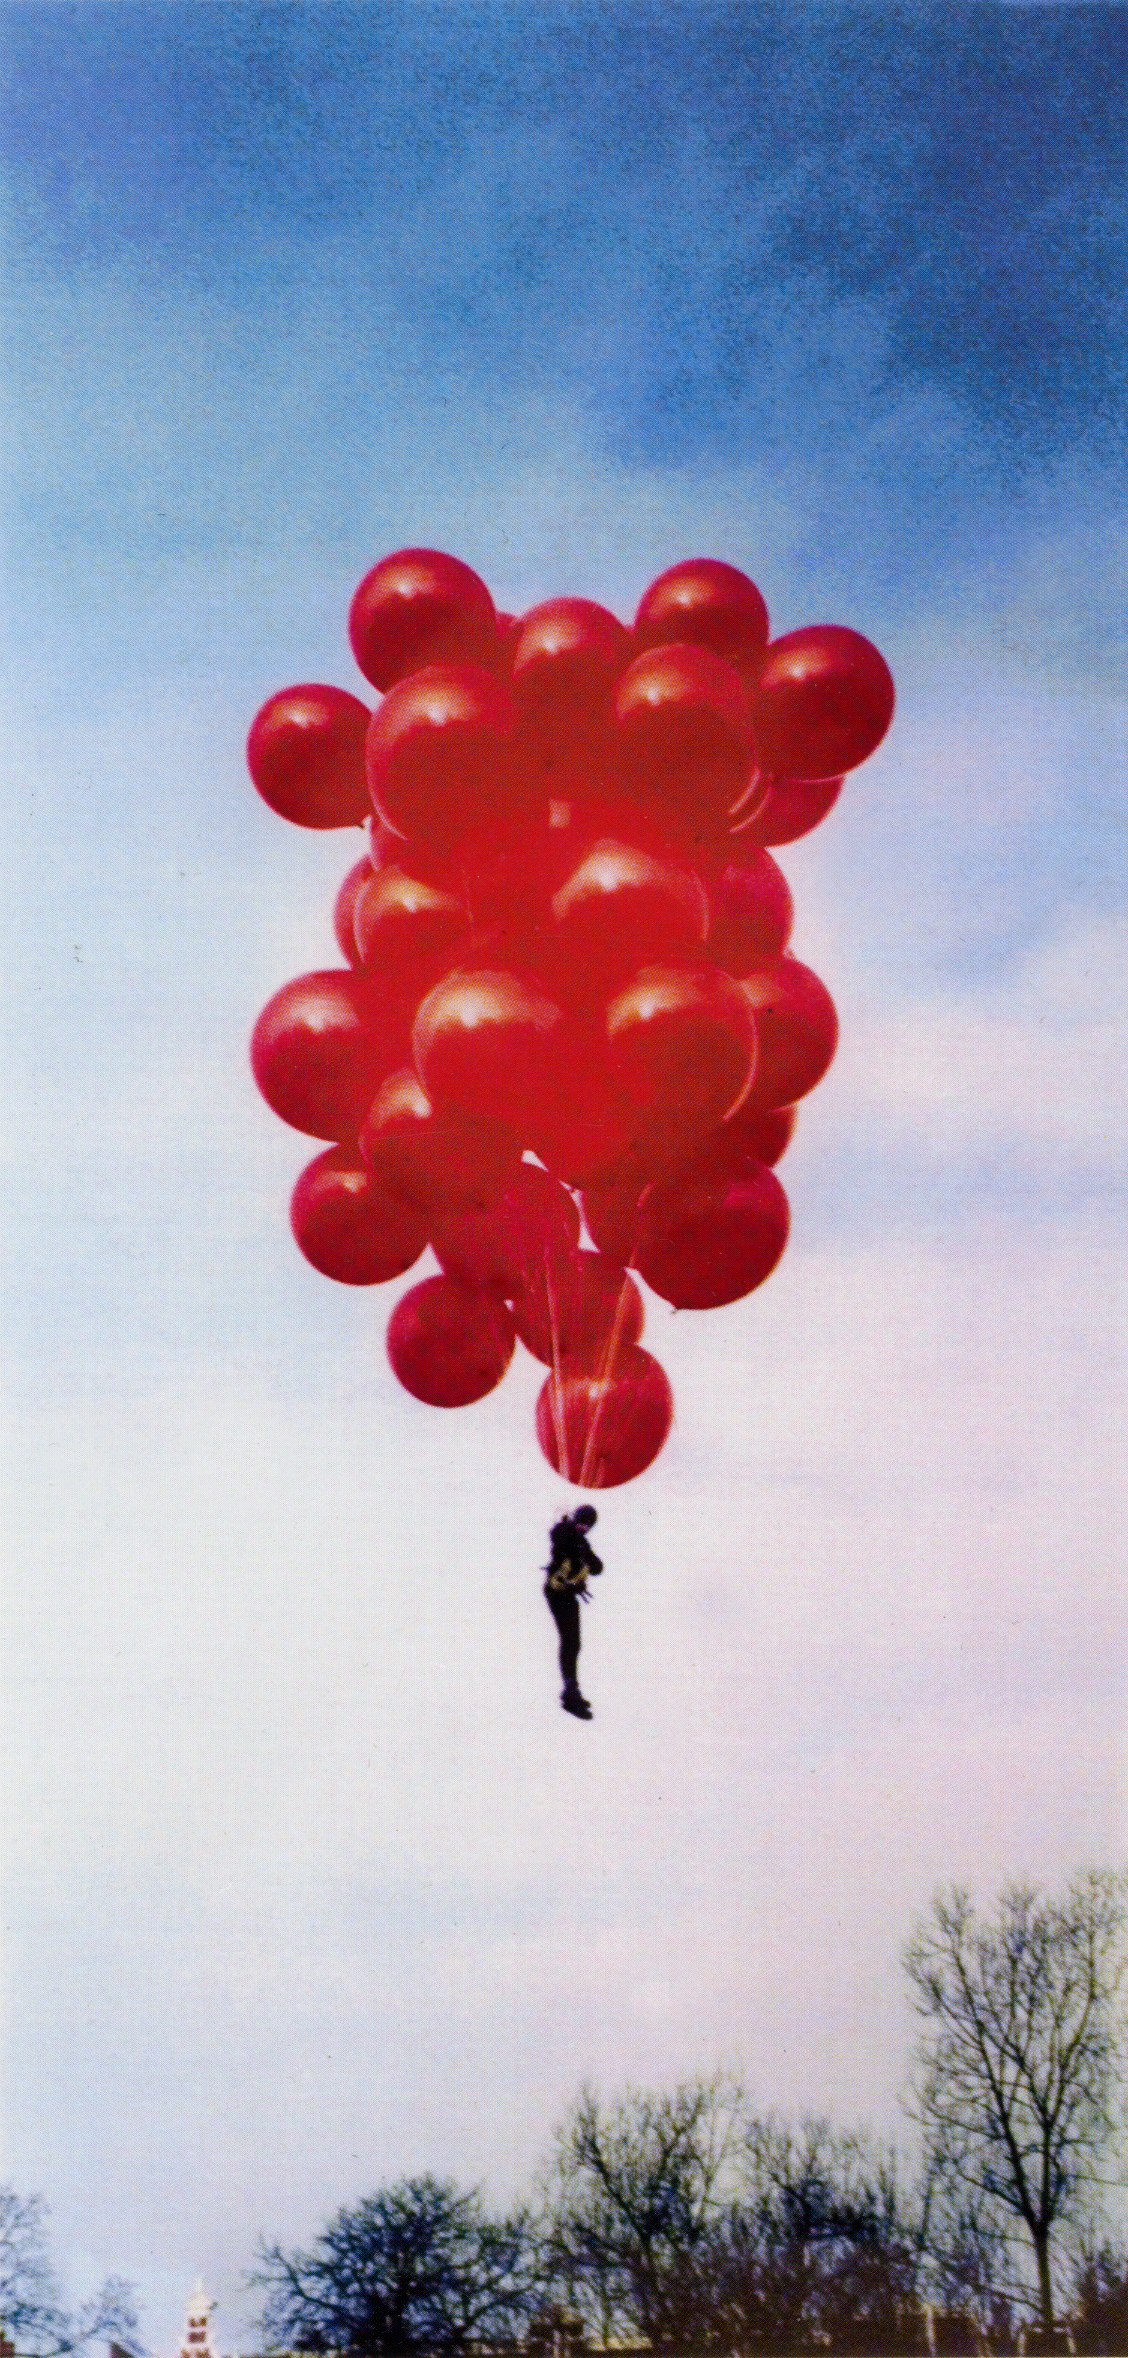 Fiona Tan’s balloon flight